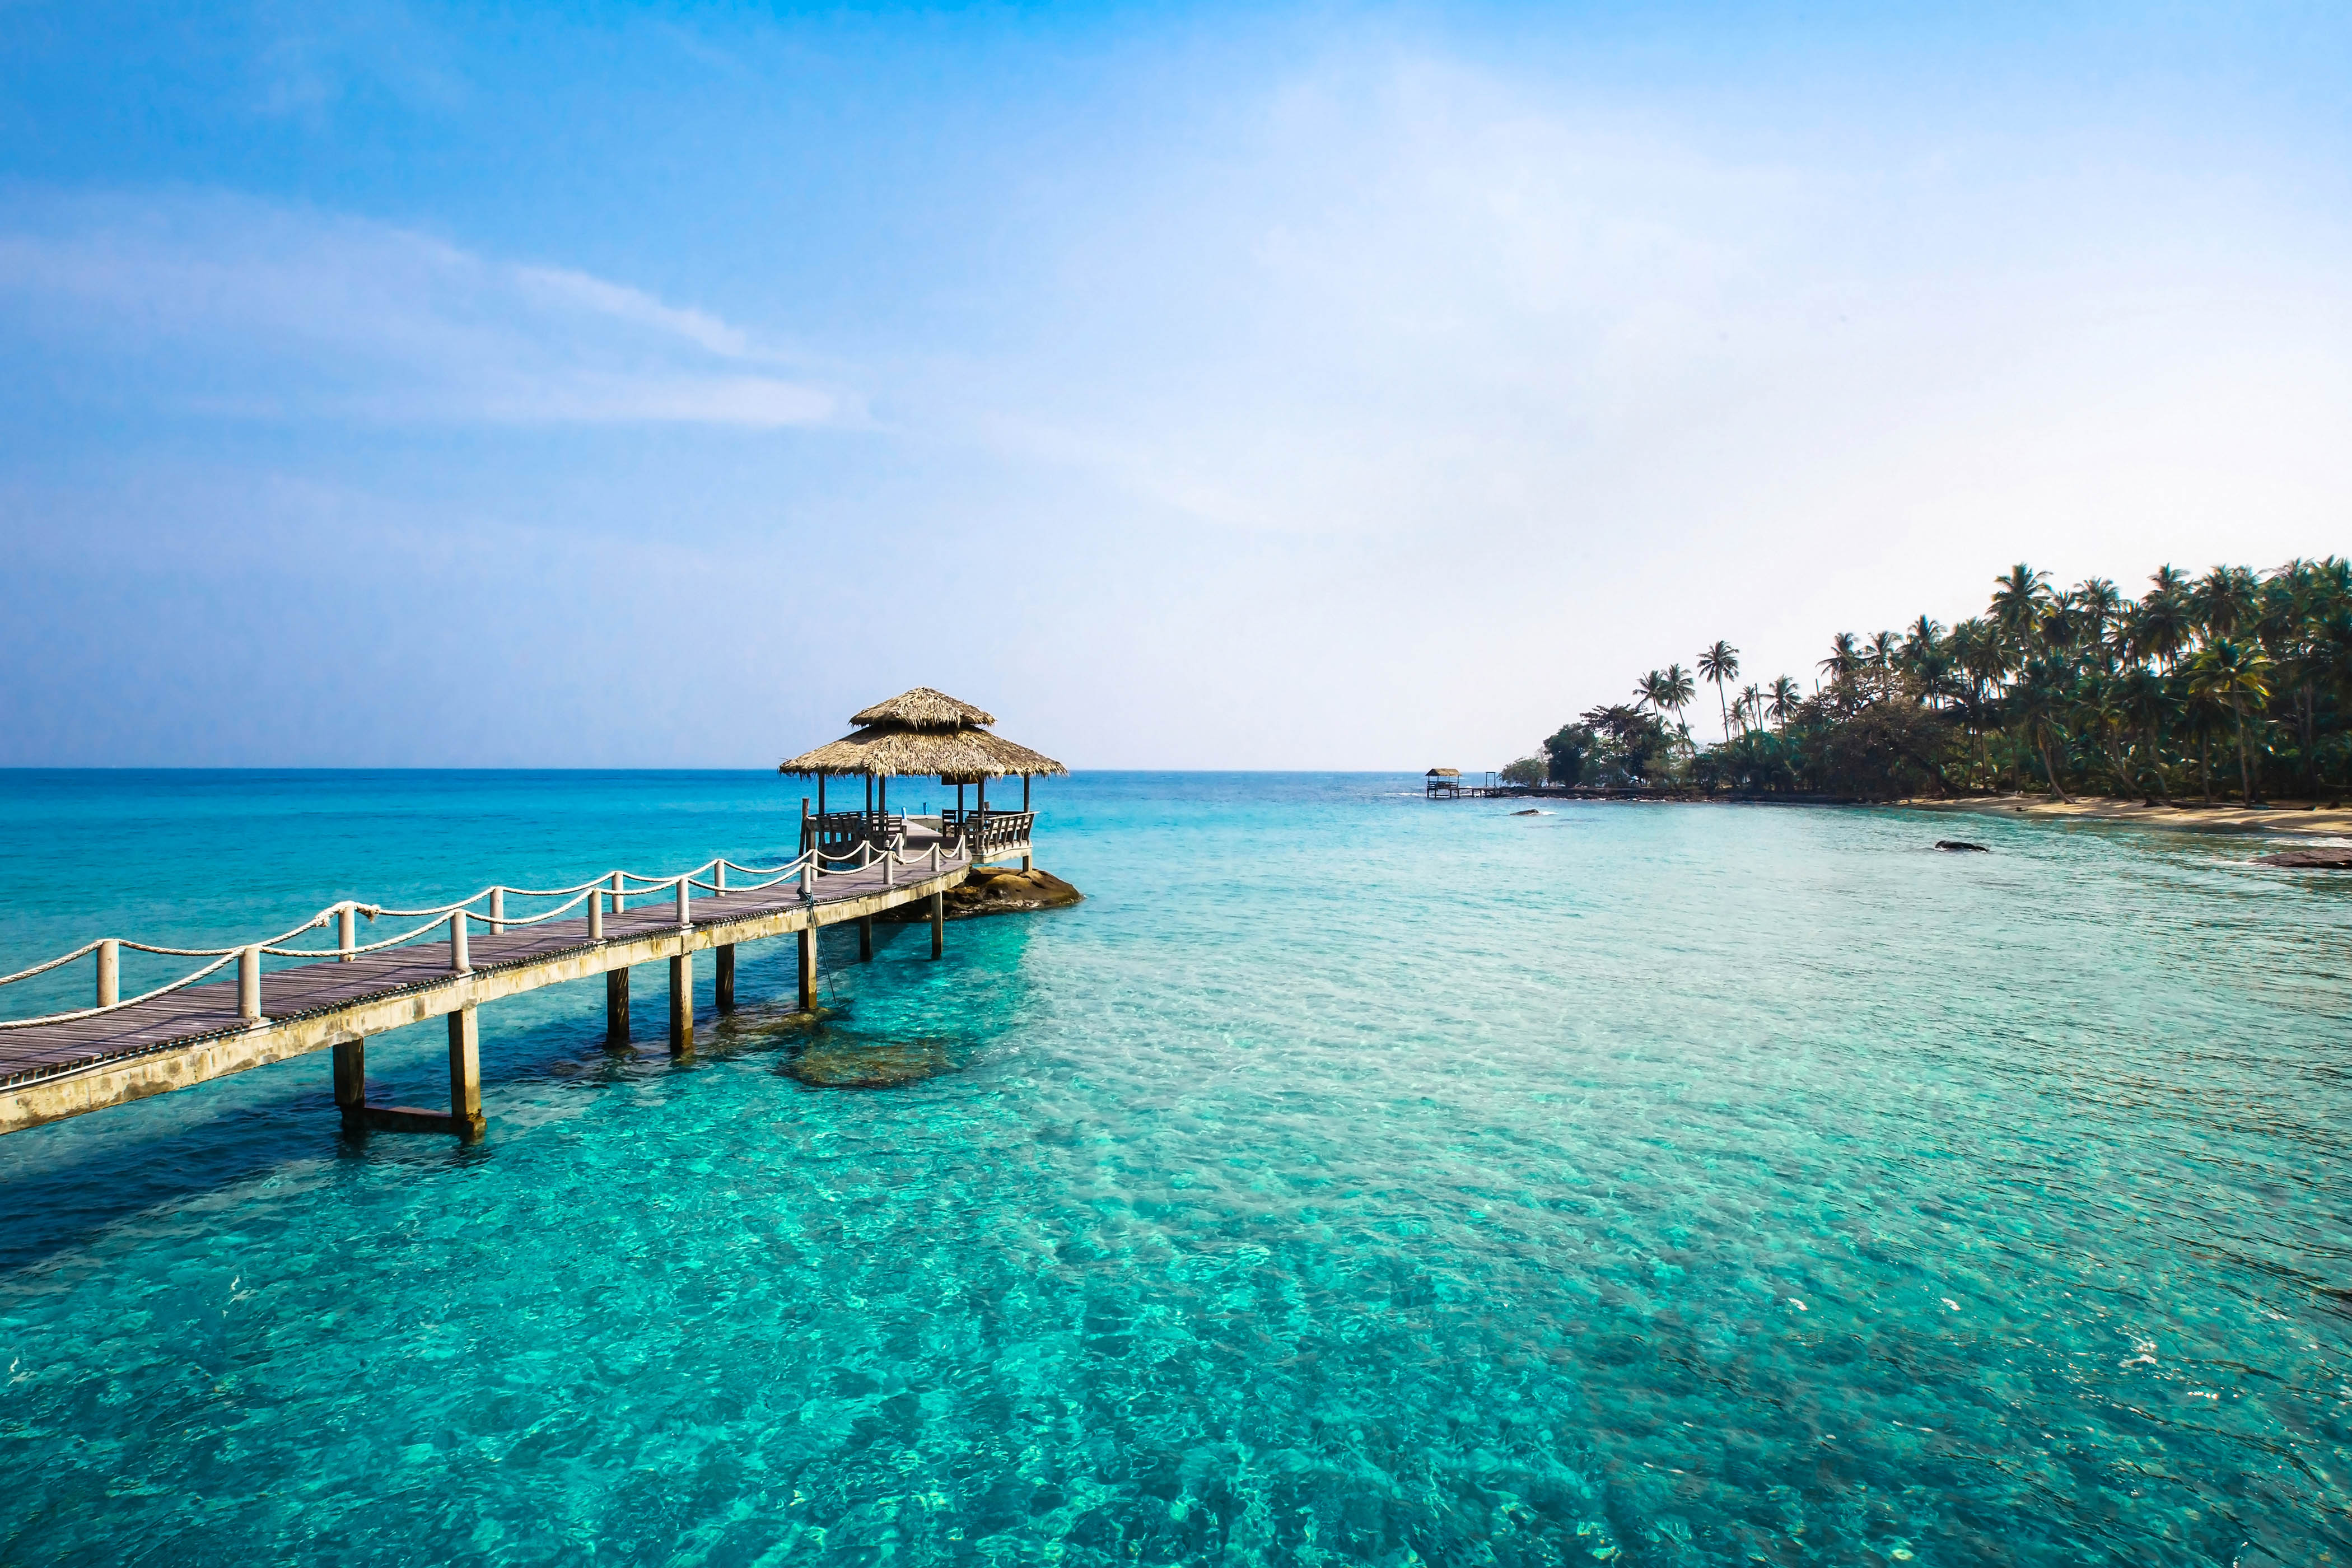 Oferta a Indonesia  Bali  con vuelos y hotel incluido por 